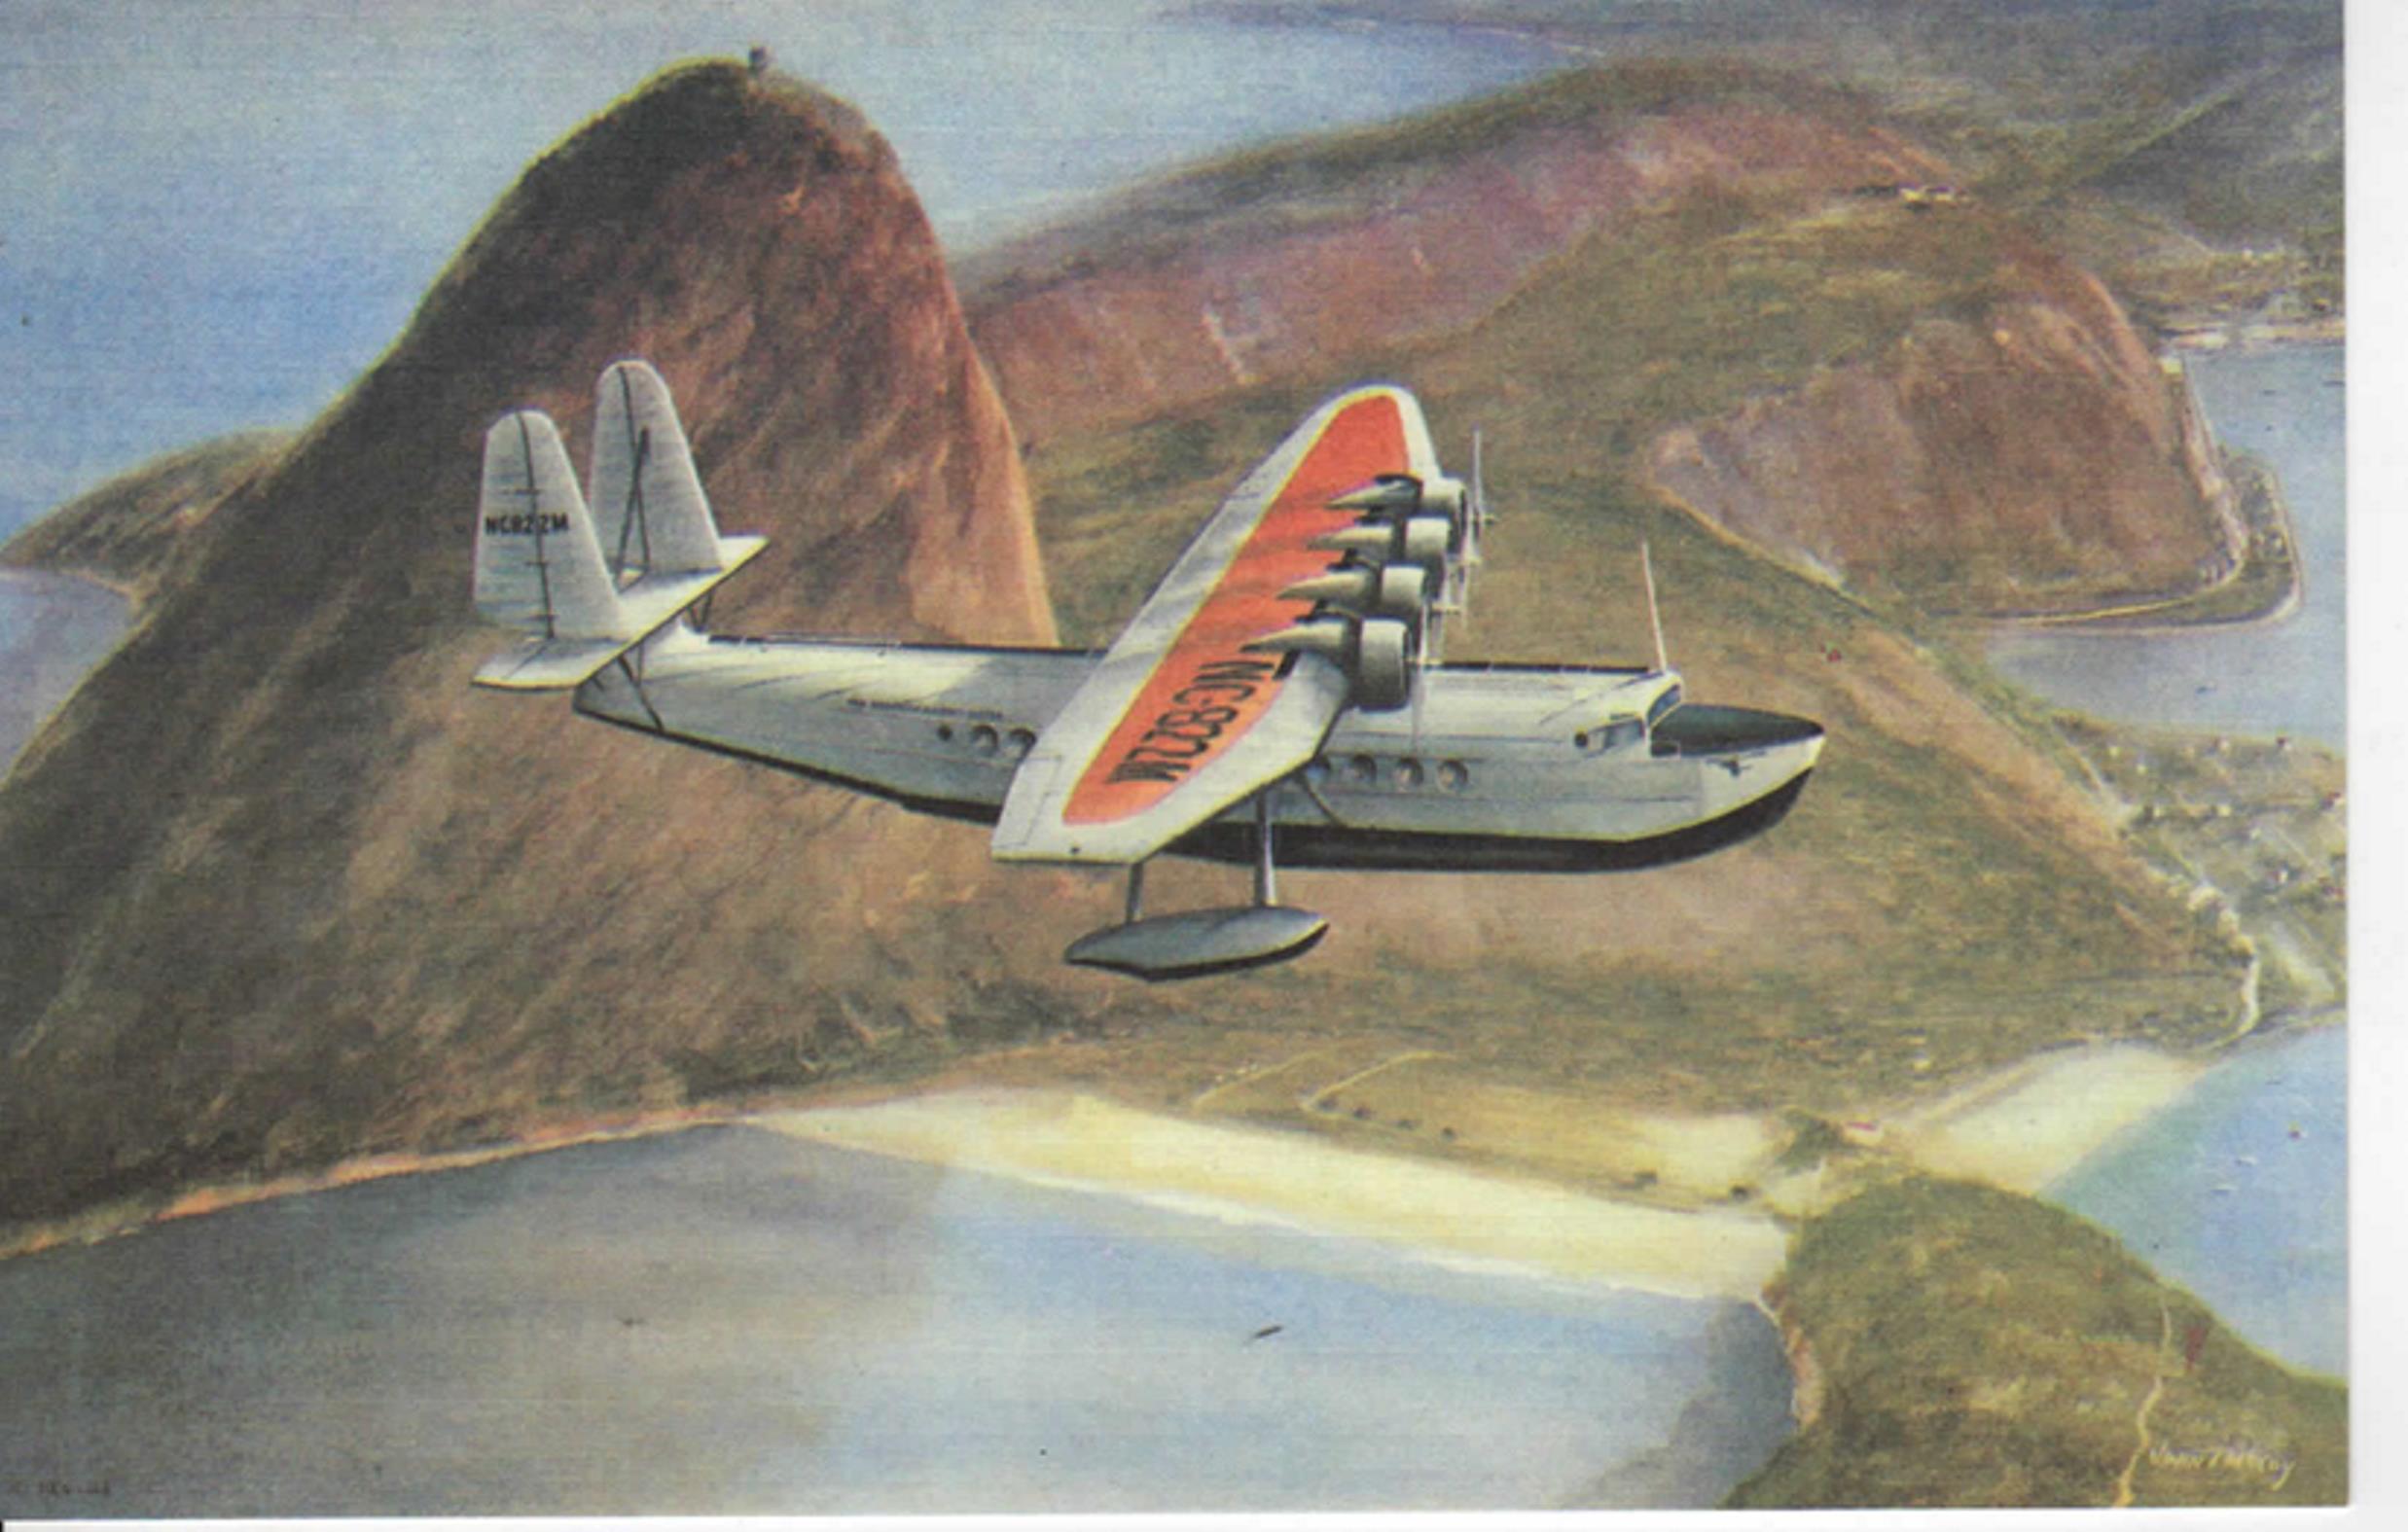 Поштова листівка із зображенням літака-амфібії S-42 компанії «Pan American» у польоті над горами біля Ріо-де-Жанейро (Бразилія). США. 18 серпня 1934 року